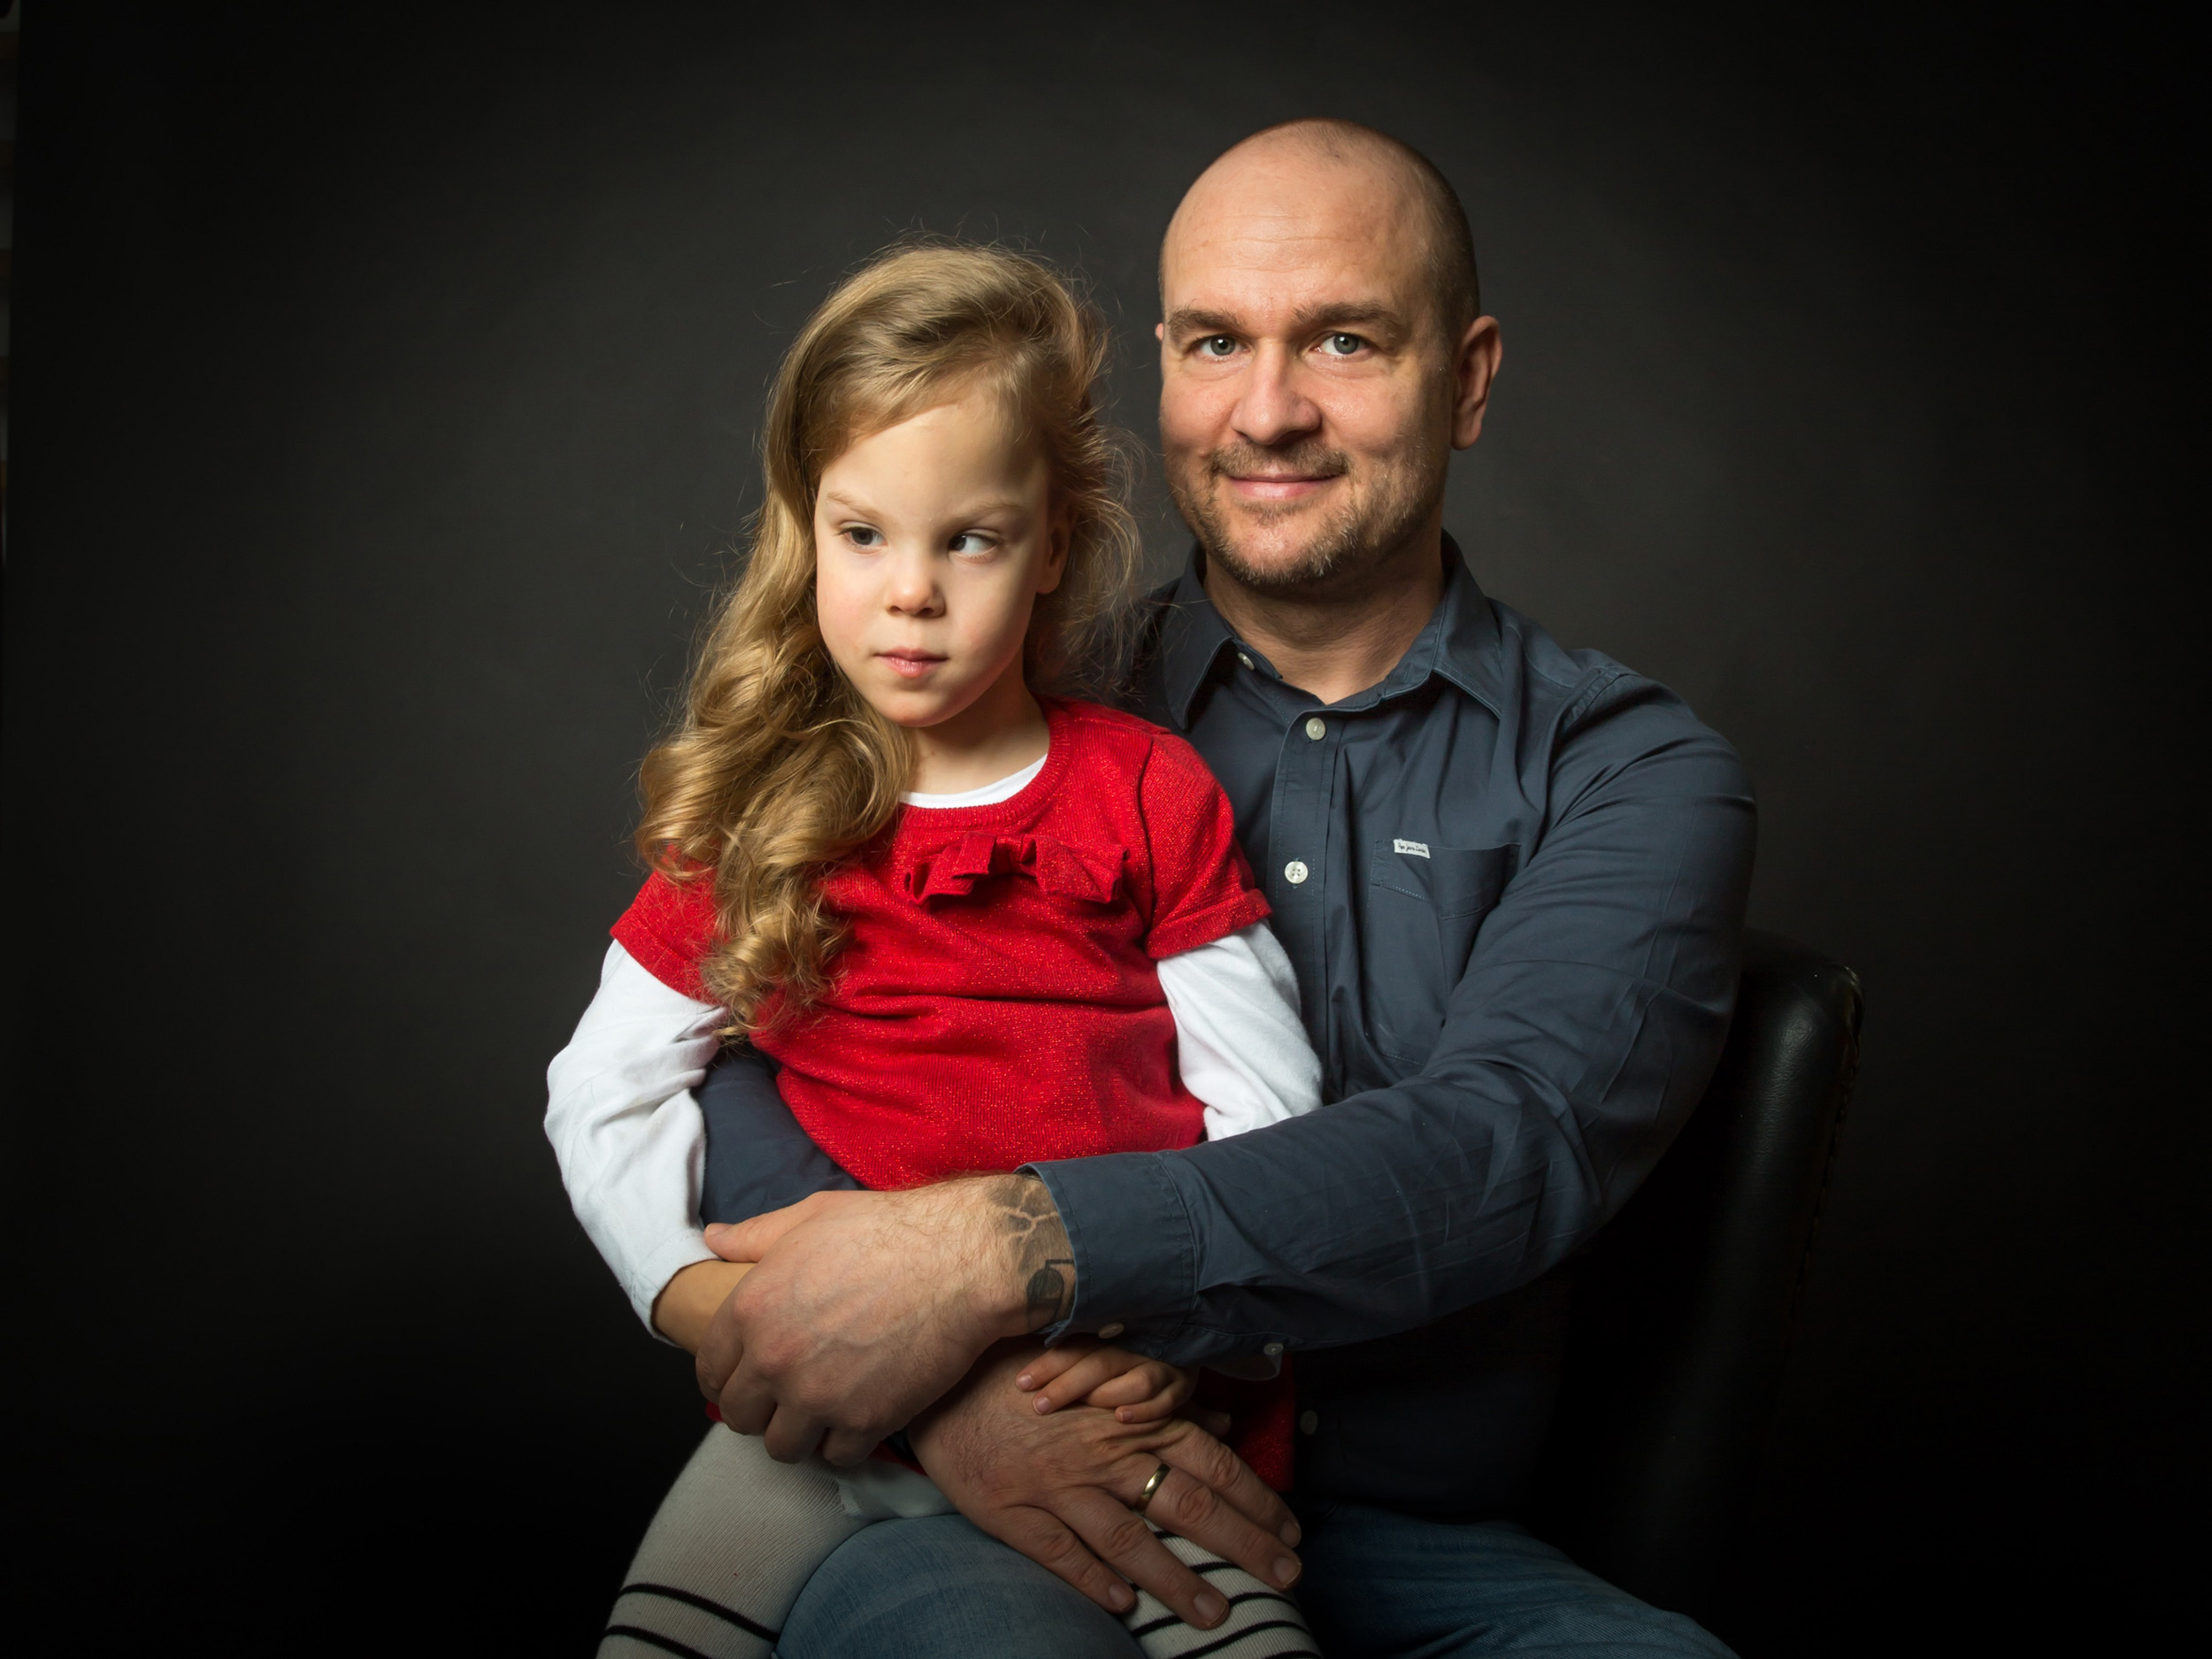 fogyatékkal élők sérült gyermek fotósorozat Vidd többre Alapítvány